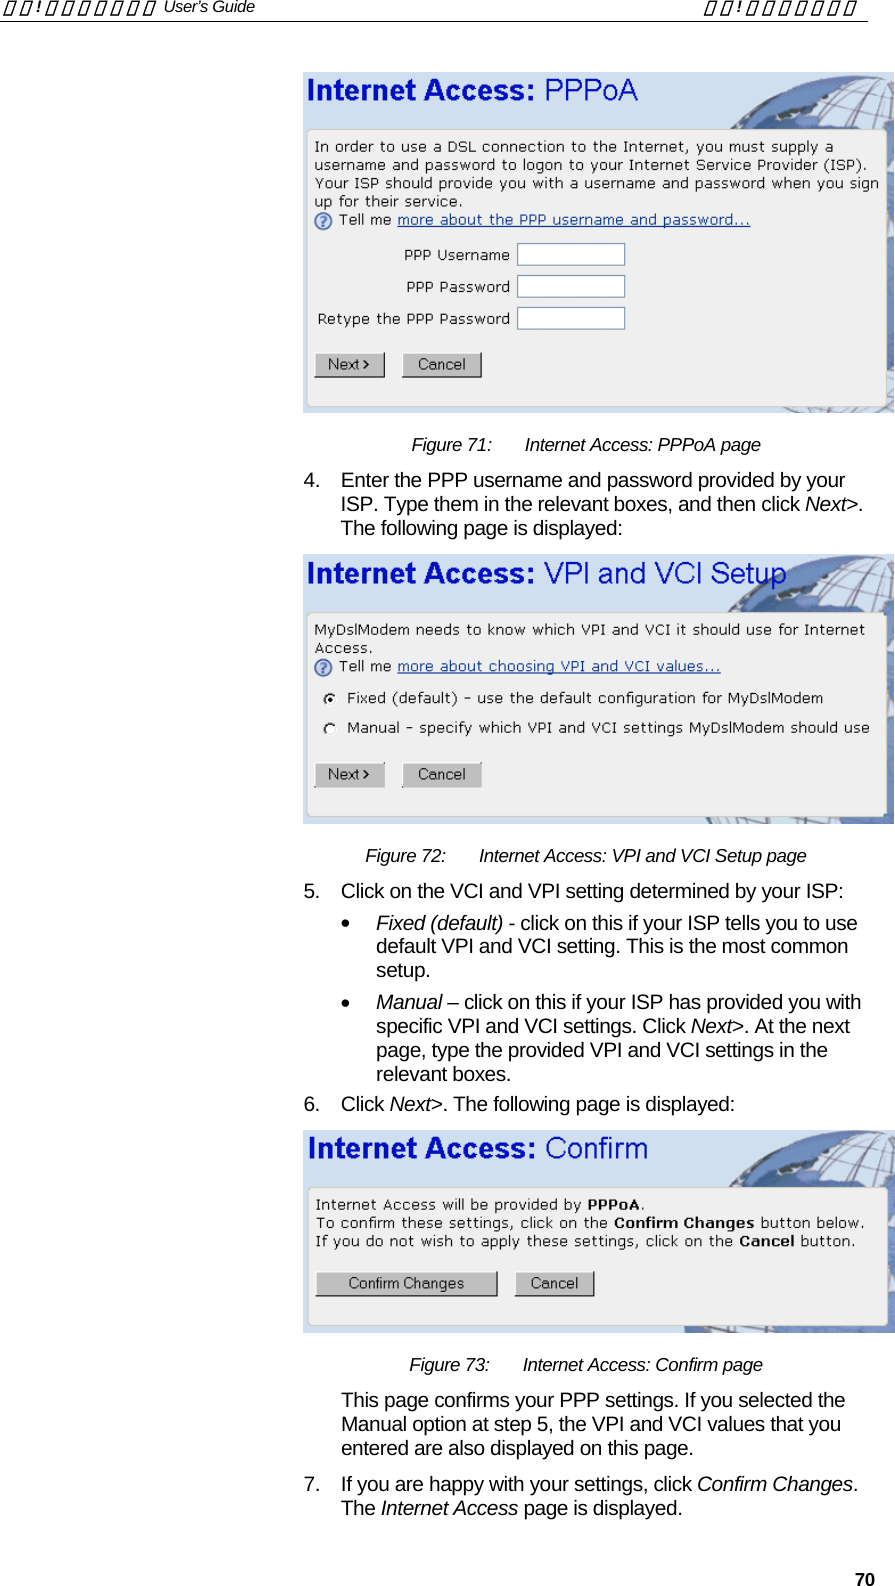 錯誤! 尚未定義樣式。 User’s Guide  錯誤! 尚未定義樣式。   70  Figure 71:  Internet Access: PPPoA page 4.  Enter the PPP username and password provided by your ISP. Type them in the relevant boxes, and then click Next&gt;. The following page is displayed:  Figure 72:  Internet Access: VPI and VCI Setup page 5.  Click on the VCI and VPI setting determined by your ISP: •  Fixed (default) - click on this if your ISP tells you to use default VPI and VCI setting. This is the most common setup. •  Manual – click on this if your ISP has provided you with specific VPI and VCI settings. Click Next&gt;. At the next page, type the provided VPI and VCI settings in the relevant boxes. 6. Click Next&gt;. The following page is displayed:  Figure 73:  Internet Access: Confirm page This page confirms your PPP settings. If you selected the Manual option at step 5, the VPI and VCI values that you entered are also displayed on this page. 7.  If you are happy with your settings, click Confirm Changes. The Internet Access page is displayed. 